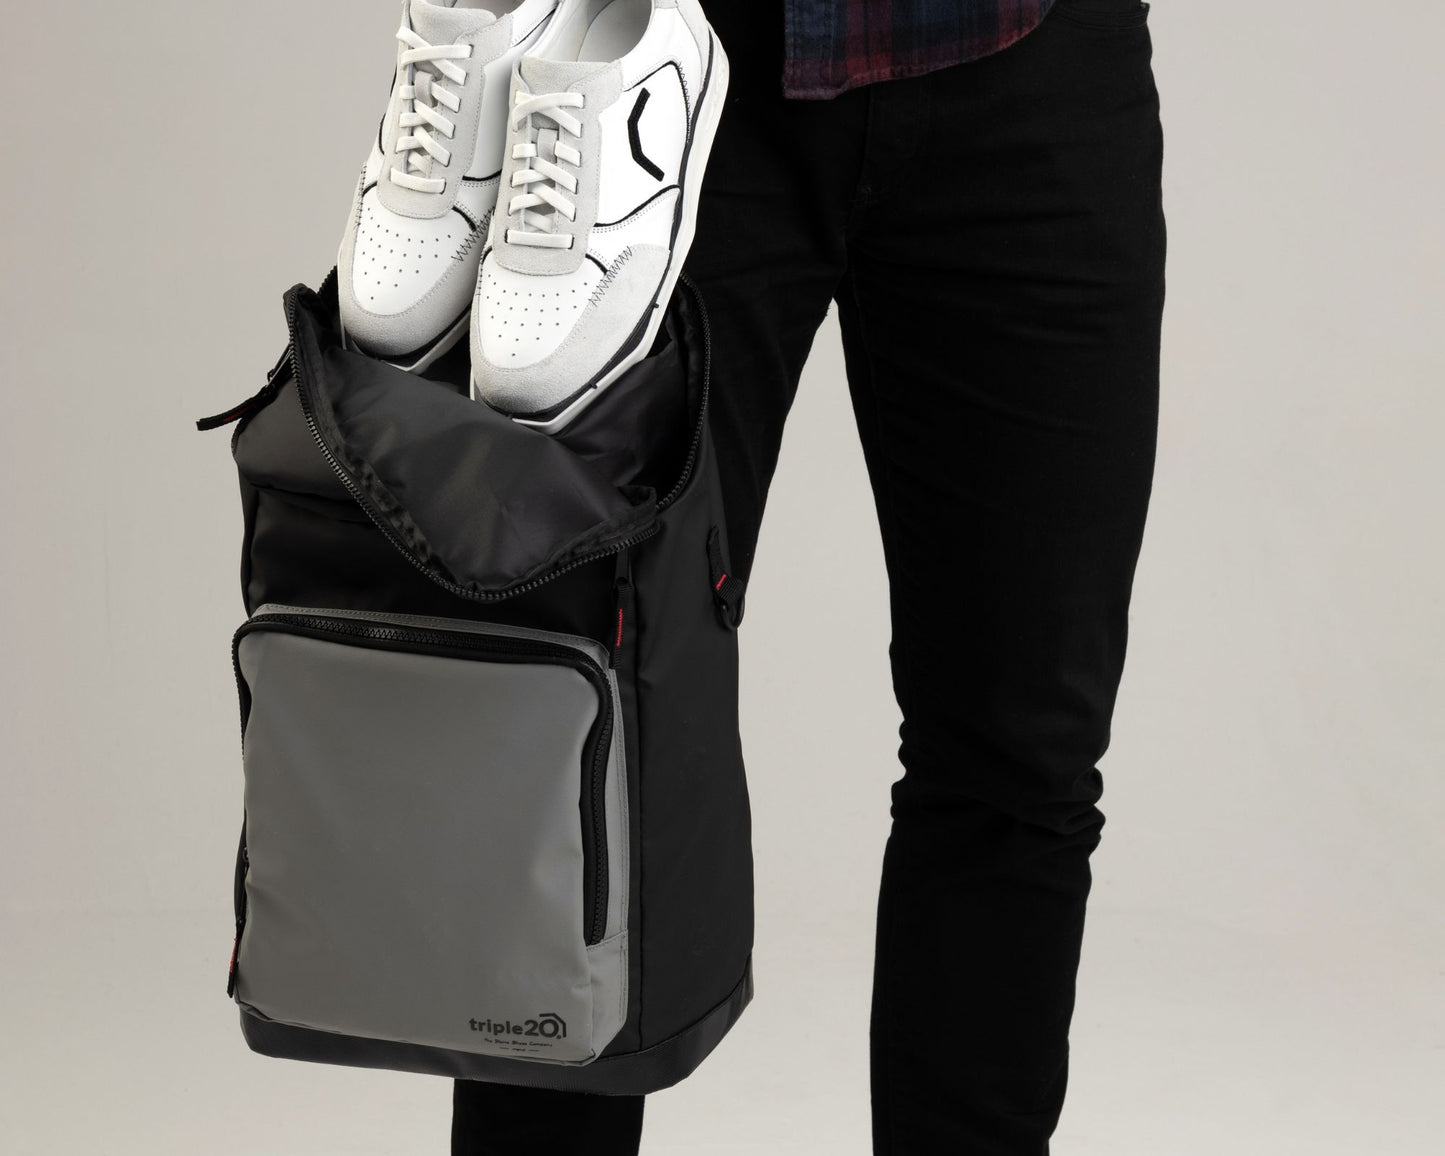 Produktfoto eines speziell für den Dartsport entworfenen Rucksacks. Auf diesem Bild wird gezeigt, wie leicht ein Paar der triple20 Dartschuhe, die eine Weltneuheit darstellen, im Rucksack verstaut werden kann. Die Schuhe sind aus Vollleder und weiß, der Rucksack ist schwarz-grau mit roten Akzenten.